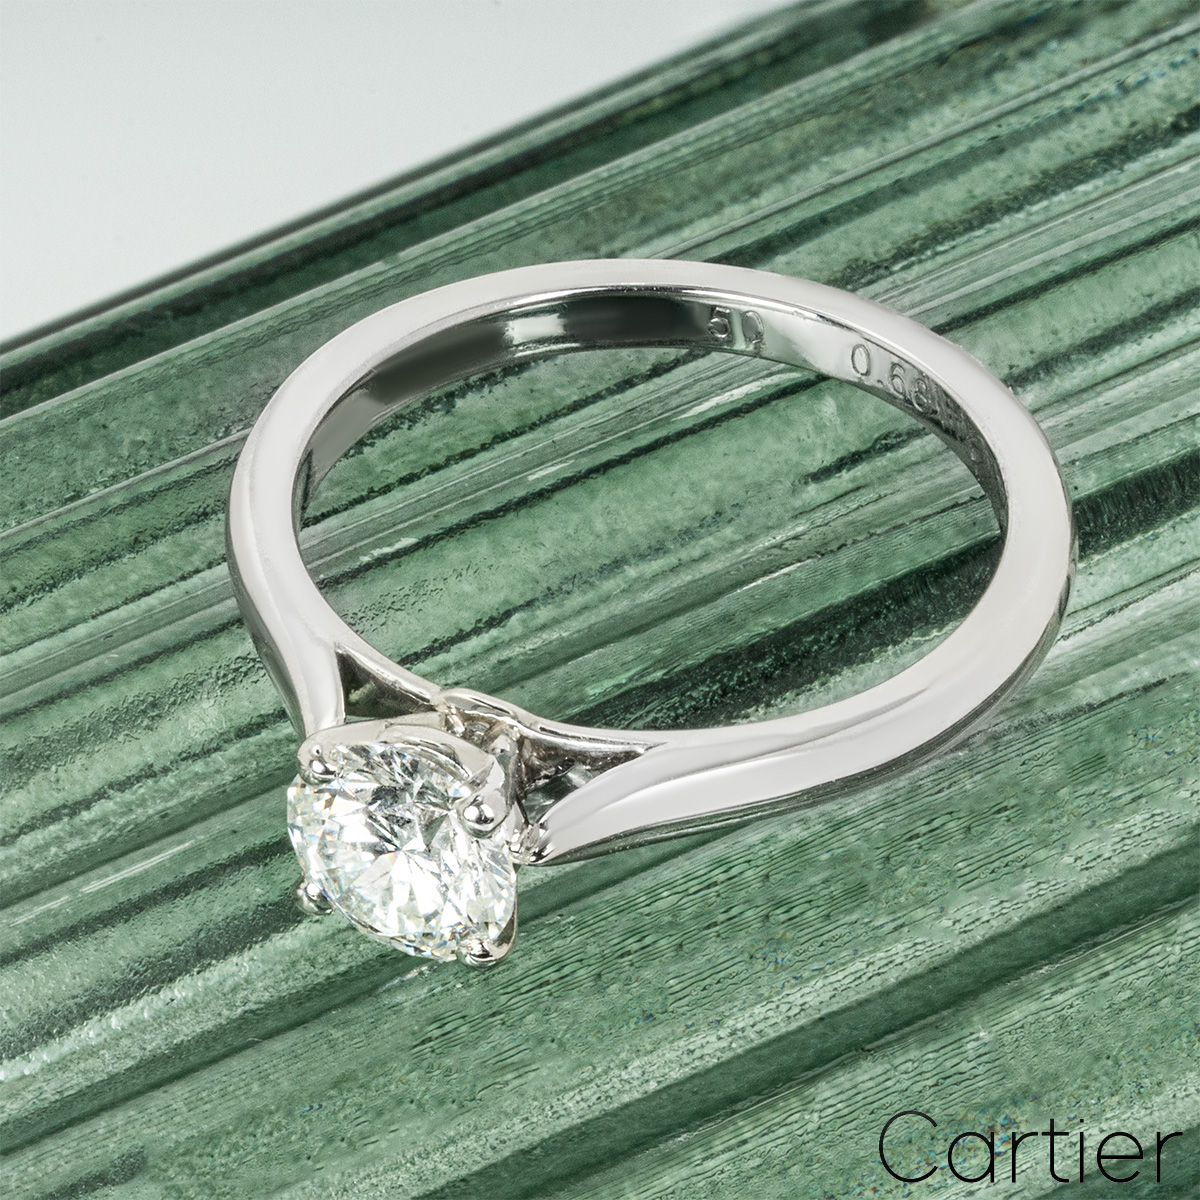 Cartier Platinum Round Brilliant Cut Diamond Solitaire 1895 Ring 0.68ct G/VS1